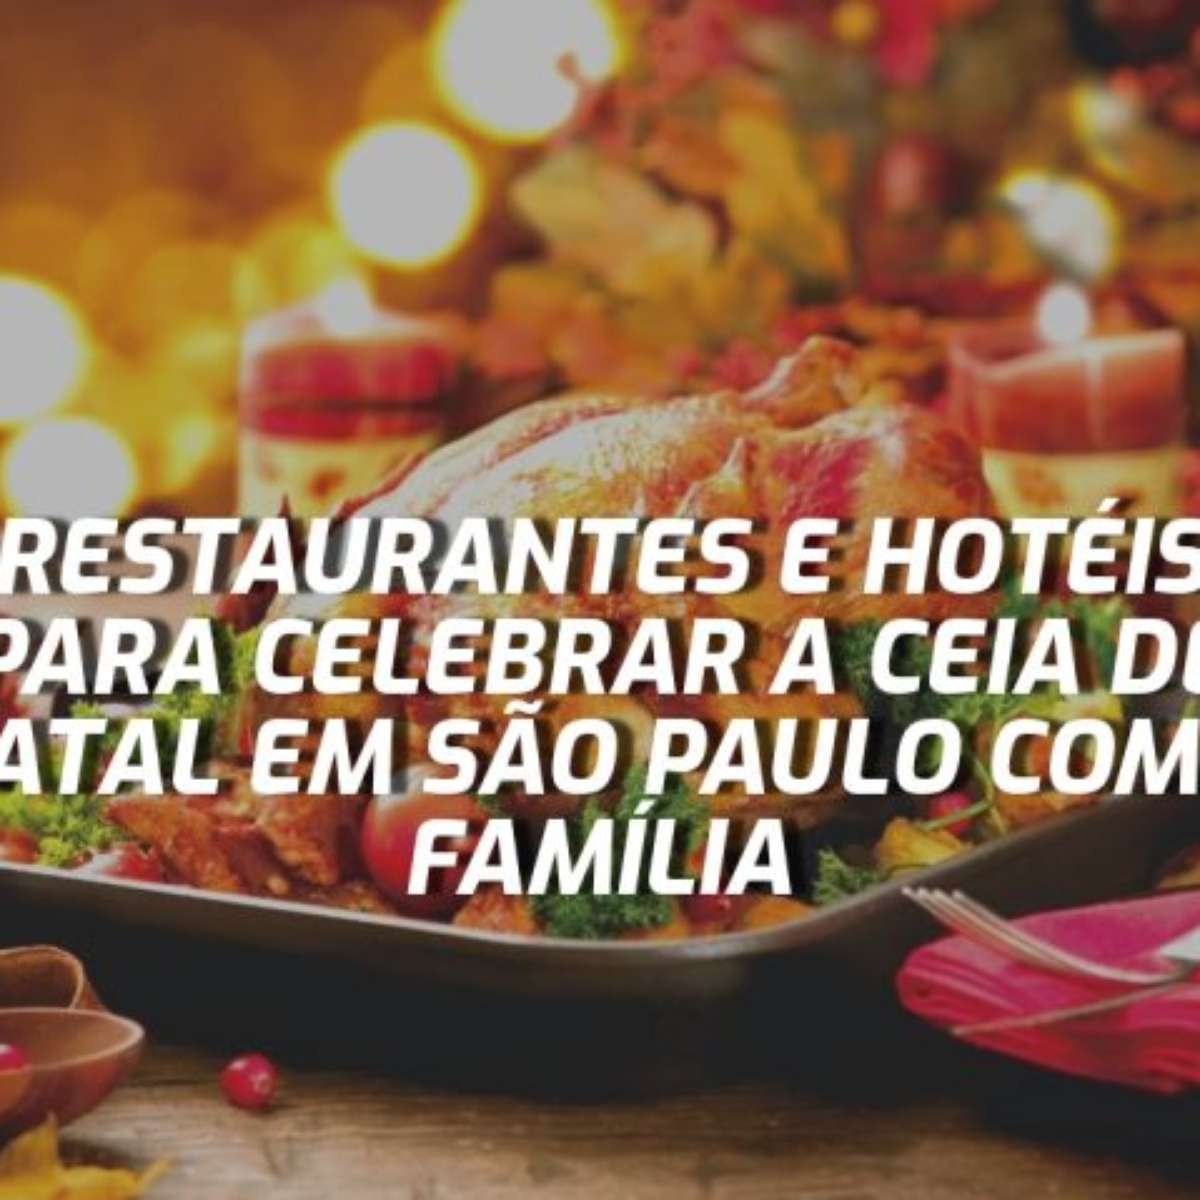 Ceia de Natal e Ano Novo em São Paulo: restaurantes e hotéis para celebrar  o fim de ano em família